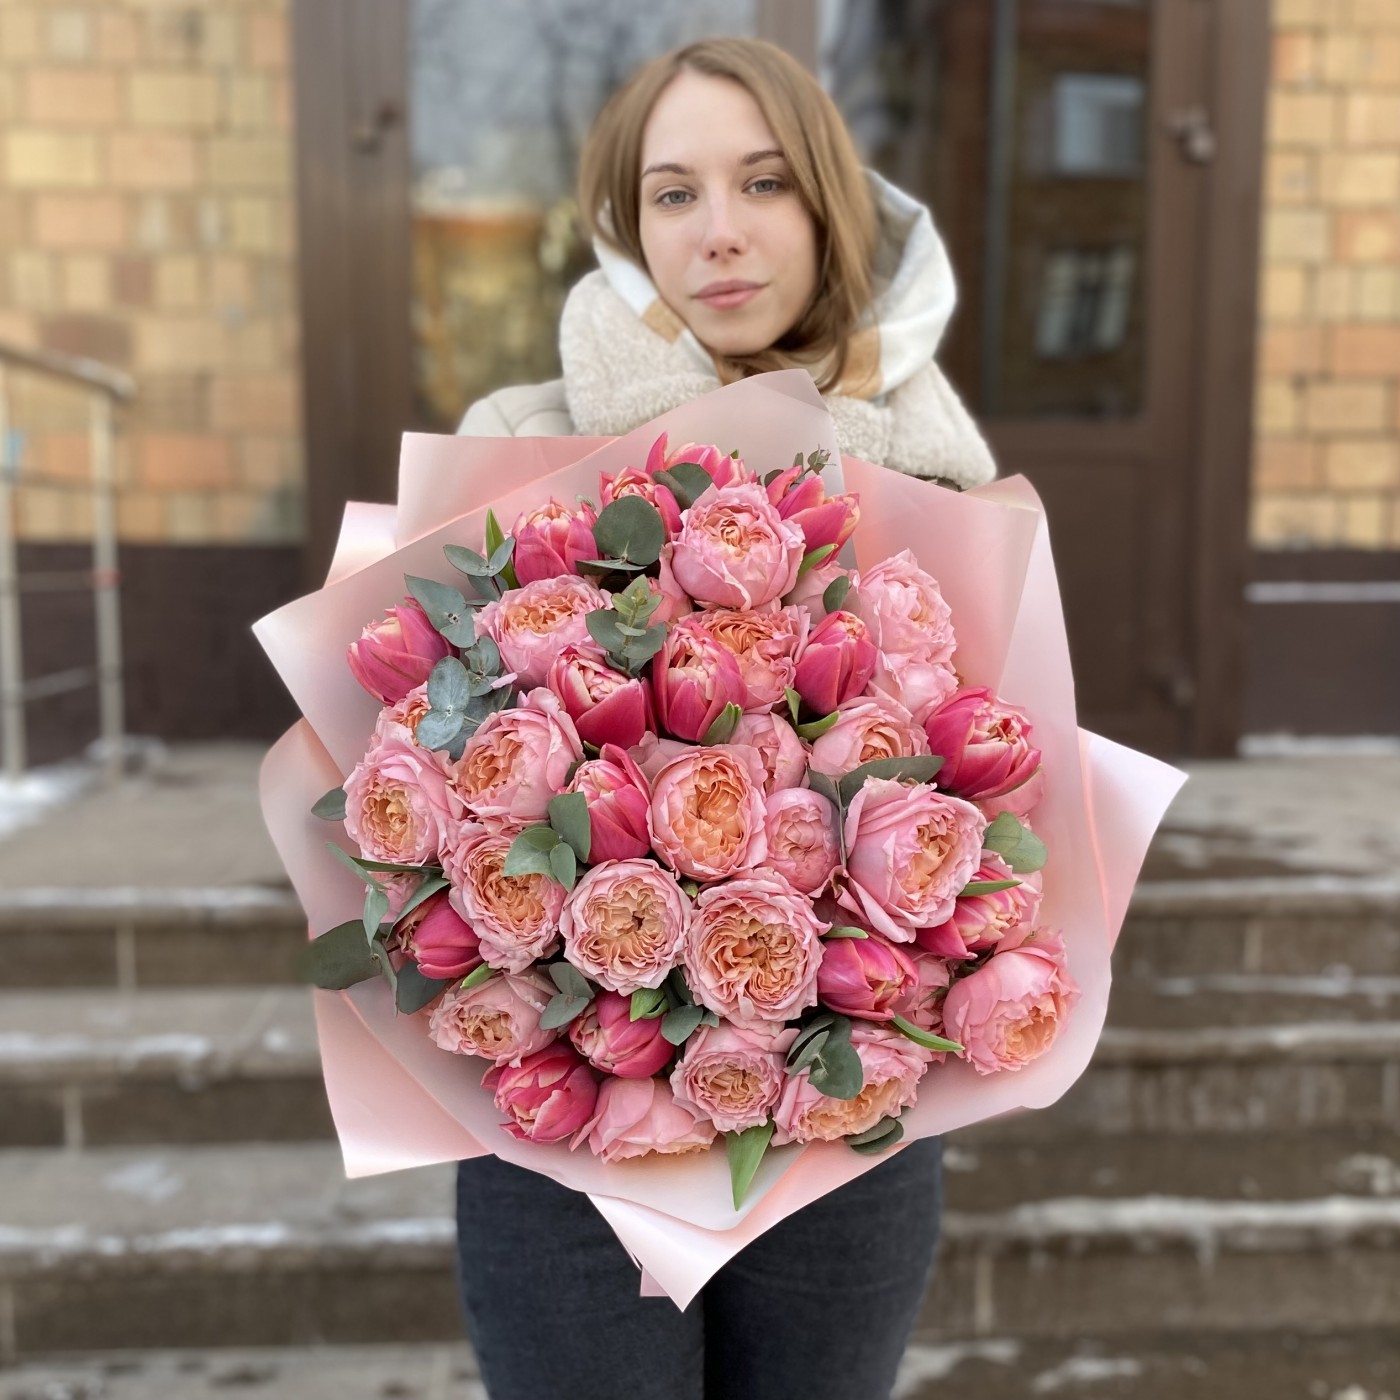 Дуэт пионовидных кустовых роз Джульетта и розовых тюльпанов